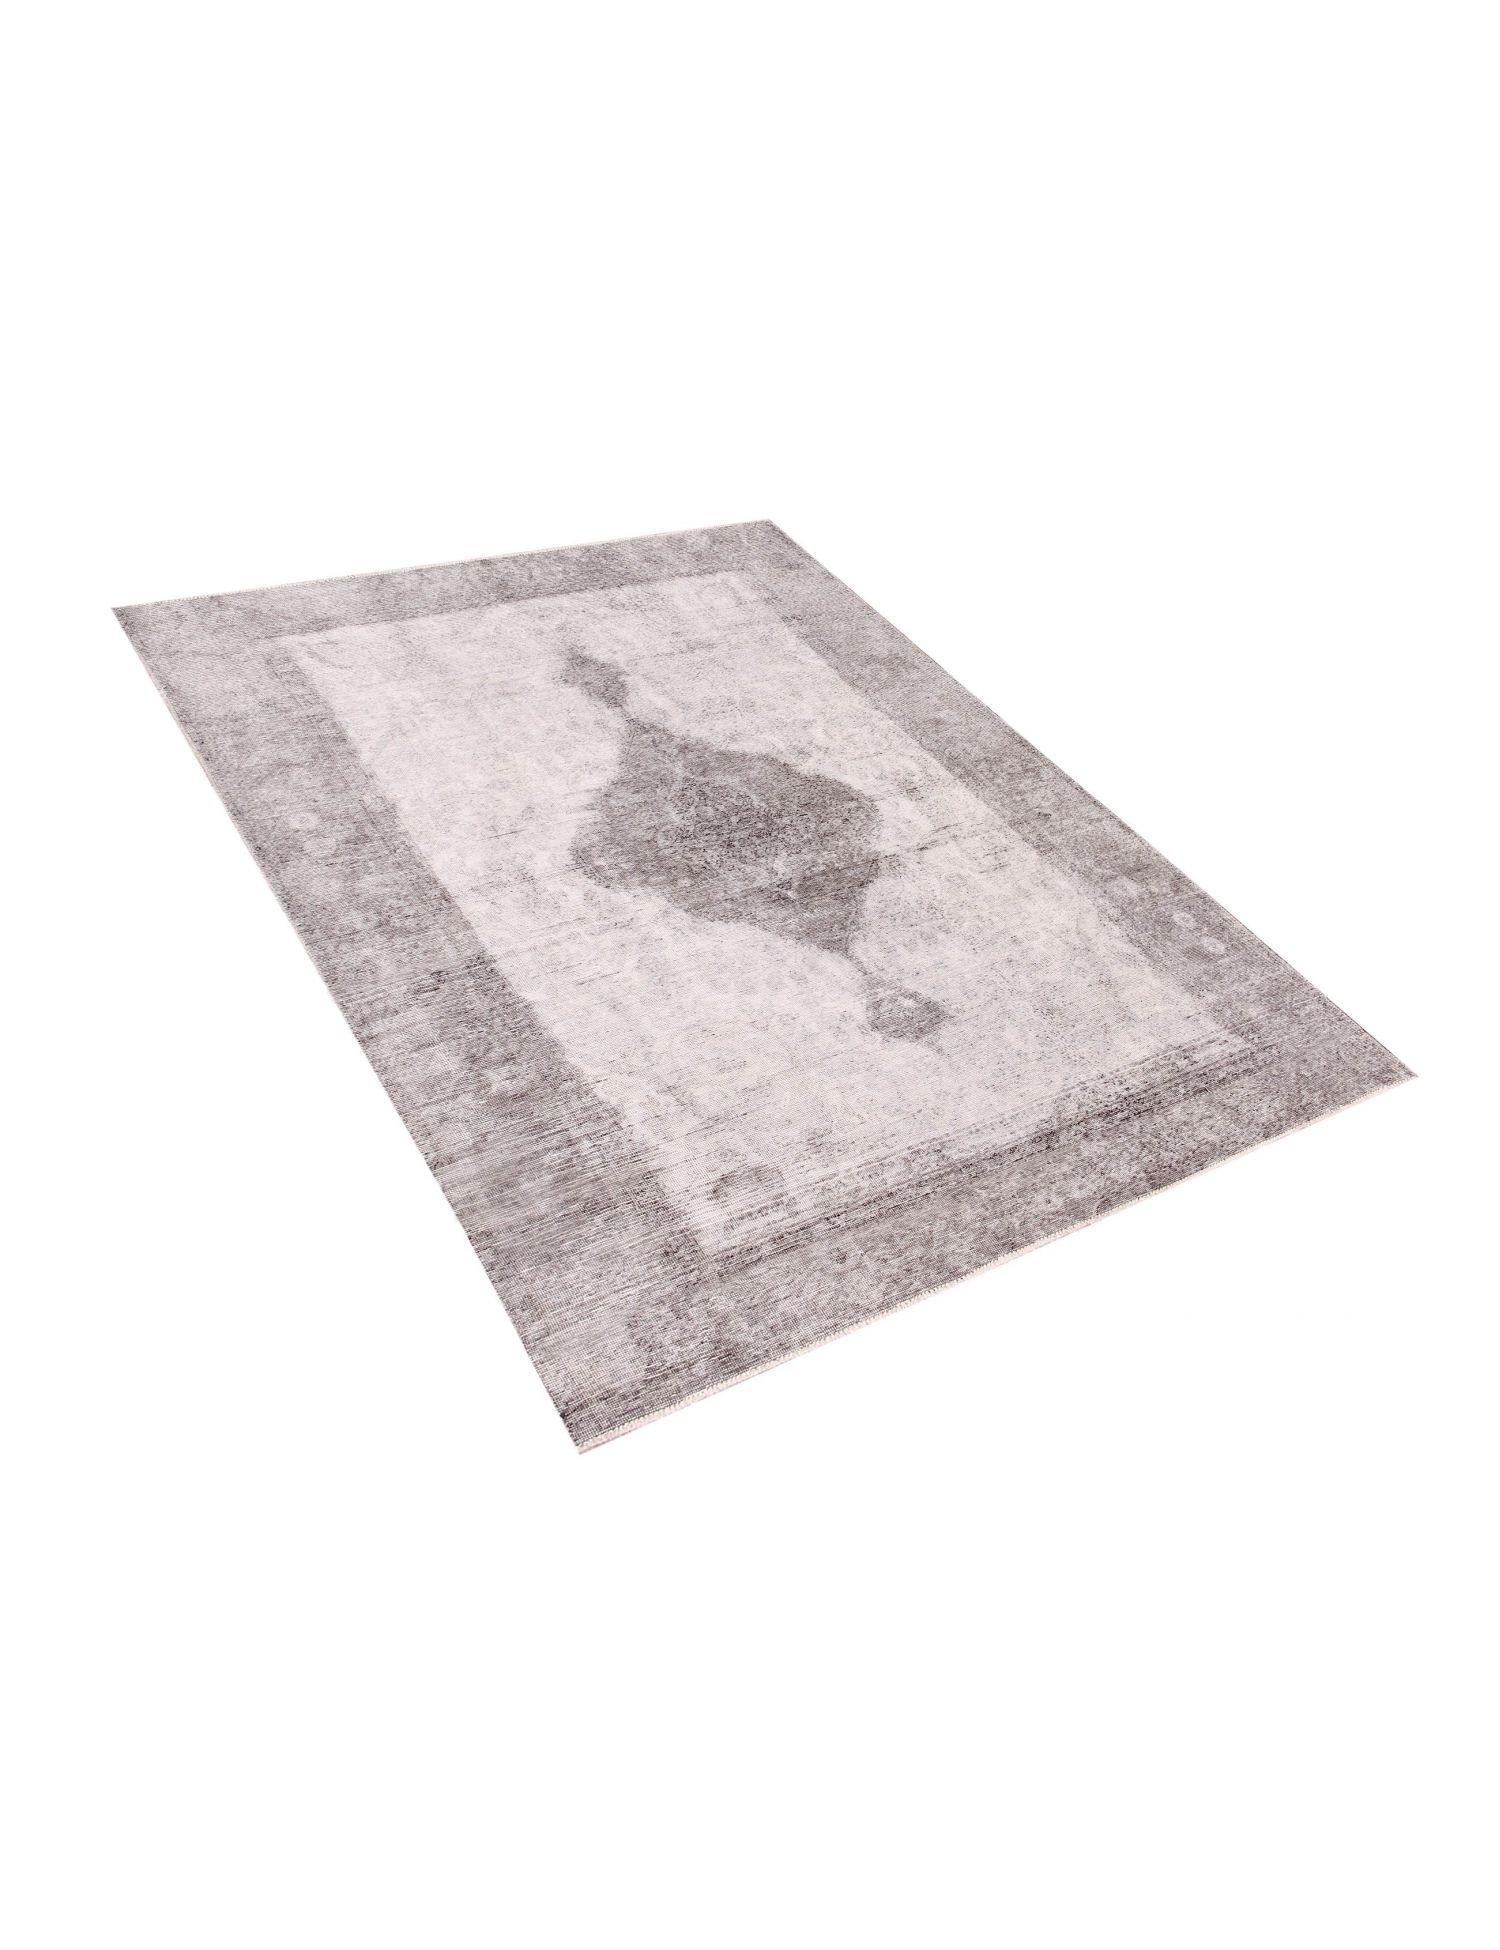 Persischer vintage teppich  grau <br/>272 x 196 cm